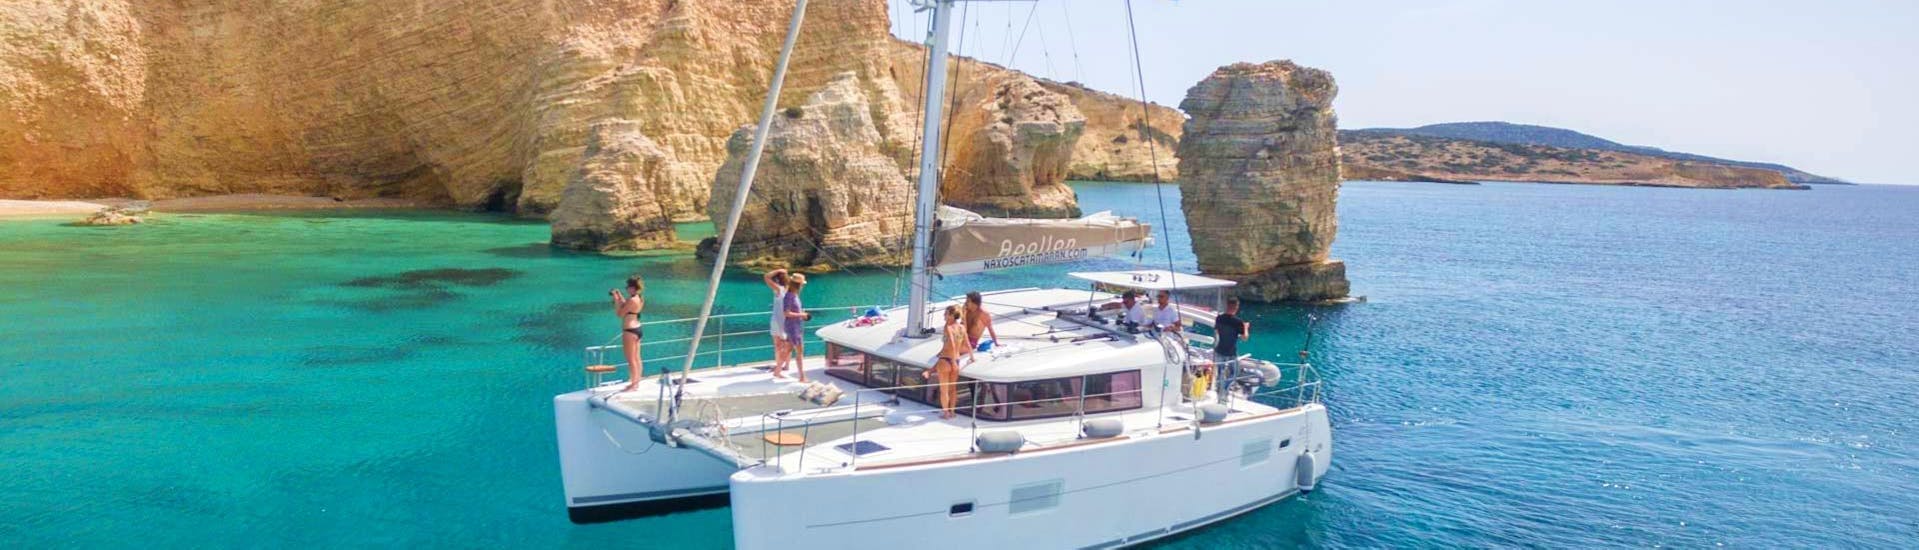 Croisière d'une journée complète sur le catamaran Apollon au départ de Naxos. Ce catamaran de luxe navigue le long de la magnifique côte de Paros.